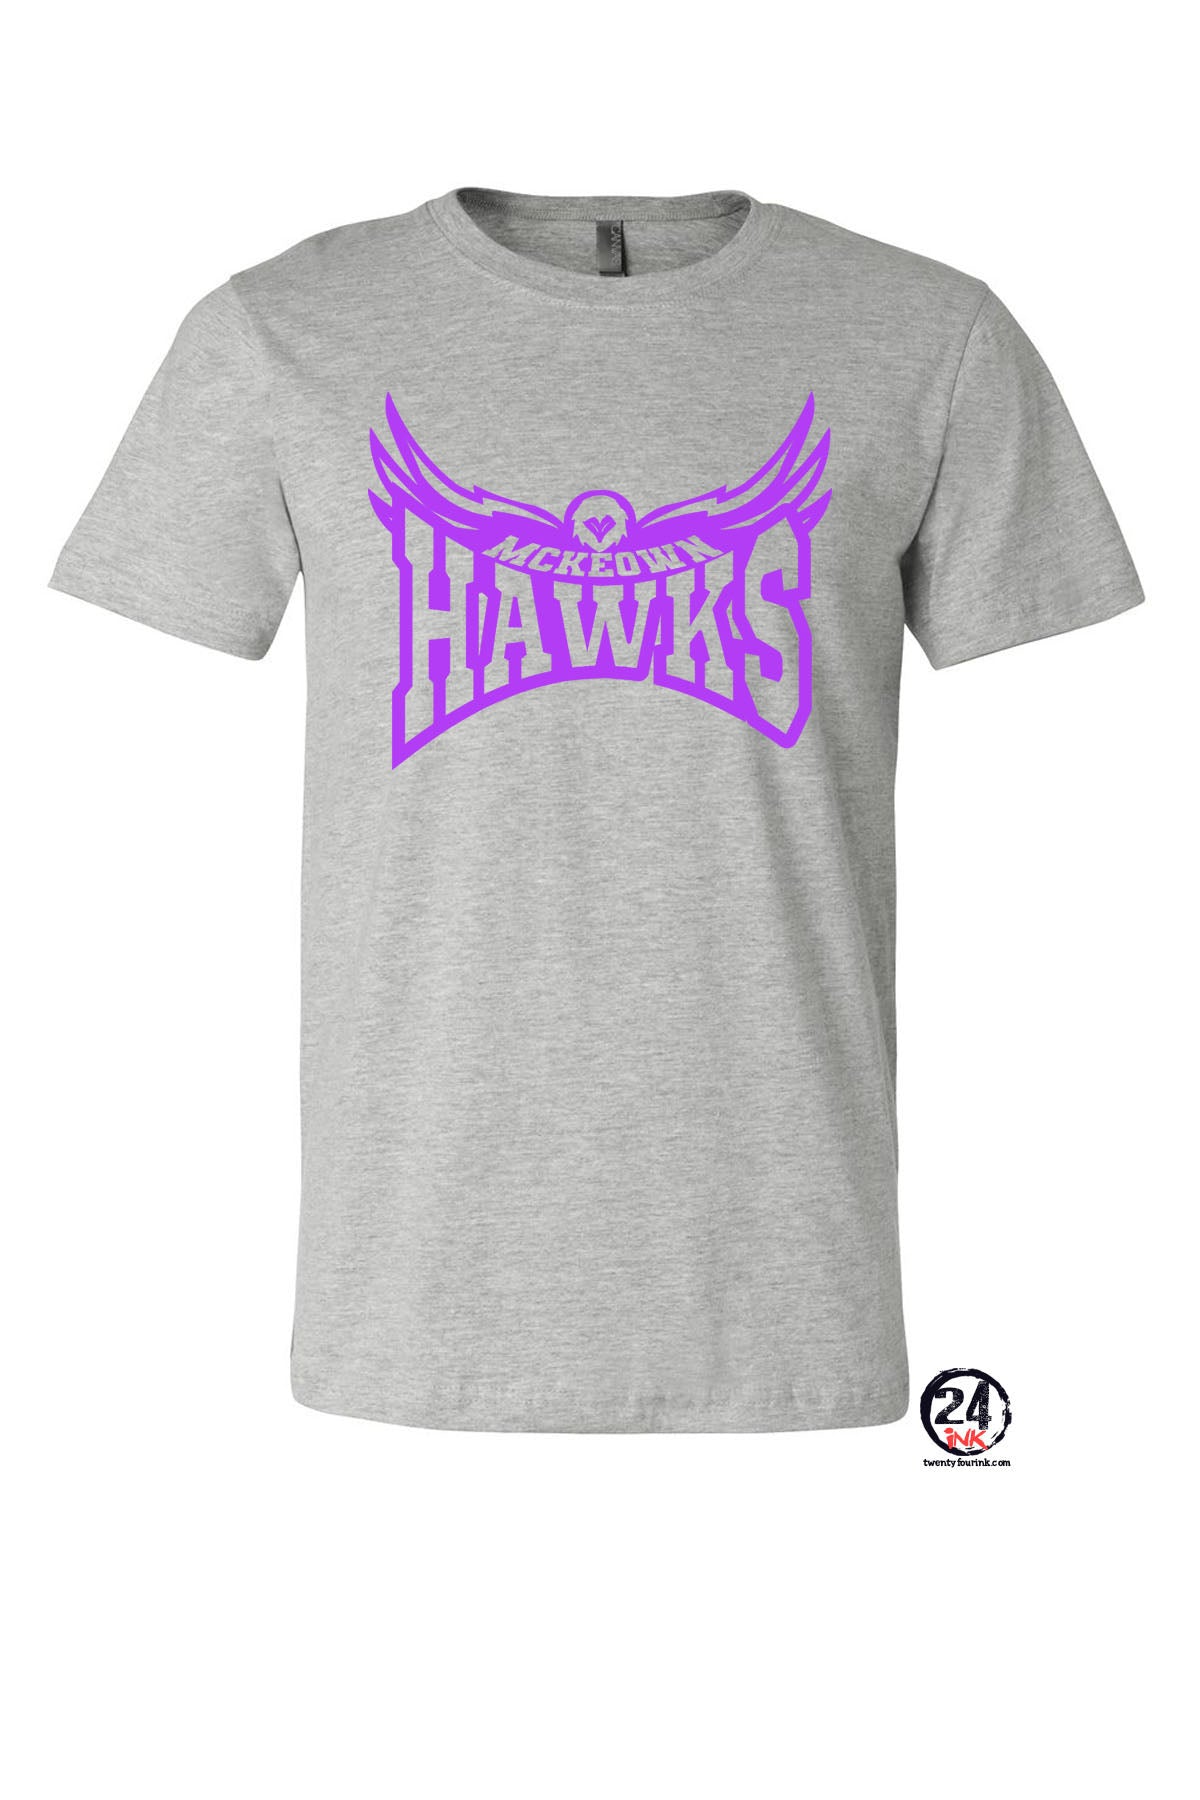 McKeown Design 6 Hawk T-Shirt